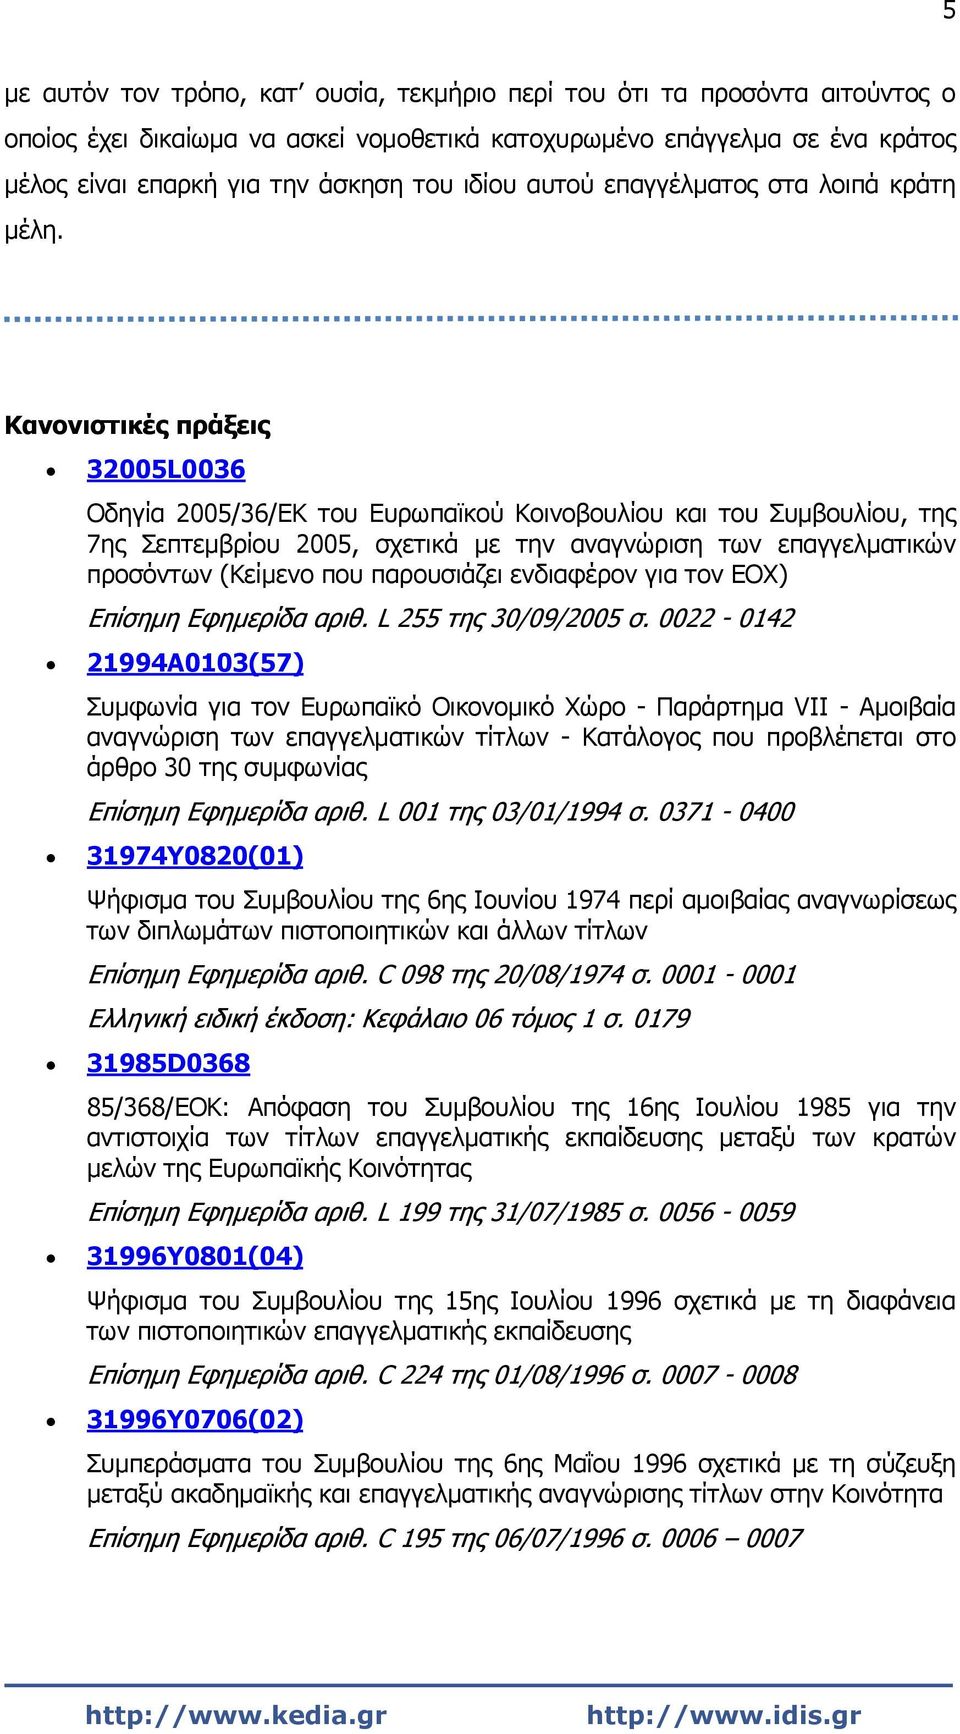 Κανονιστικές πράξεις 32005L0036 Οδηγία 2005/36/ΕΚ του Ευρωπαϊκού Κοινοβουλίου και του Συμβουλίου, της 7ης Σεπτεμβρίου 2005, σχετικά με την αναγνώριση των επαγγελματικών προσόντων (Κείμενο που